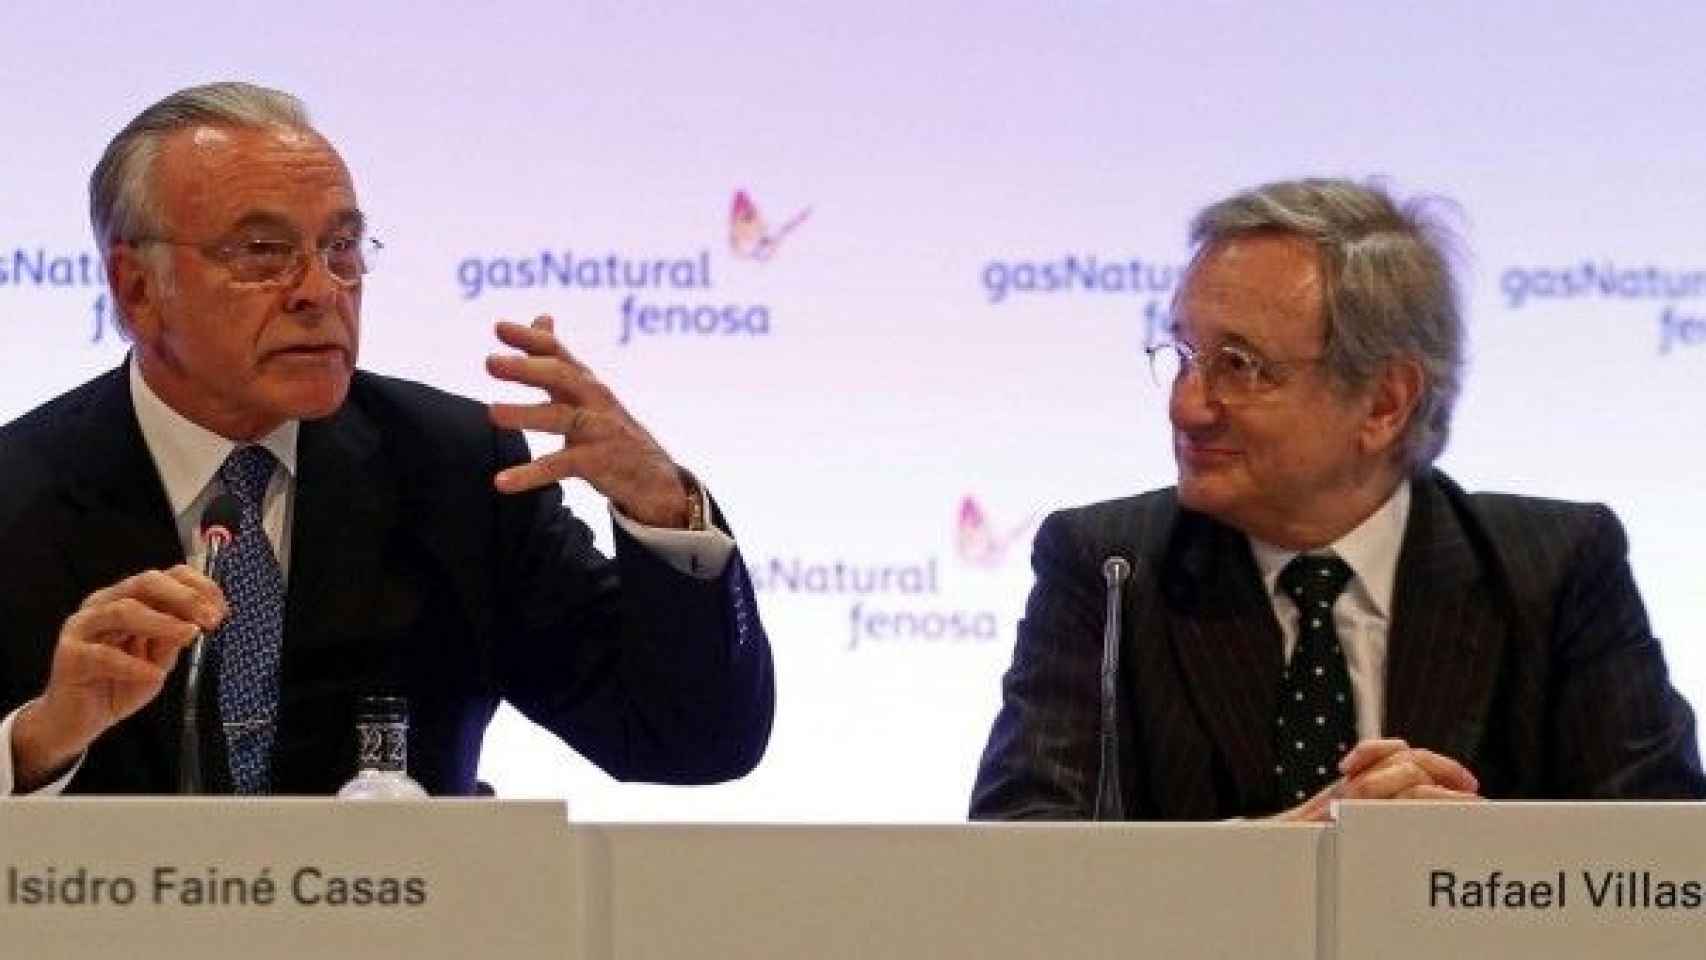 El presidente de Gas Natural Fenosa, Isidro Fainé, y el director general de la compañía energética, Rafael Villaseca, en una imagen de archivo / EFE